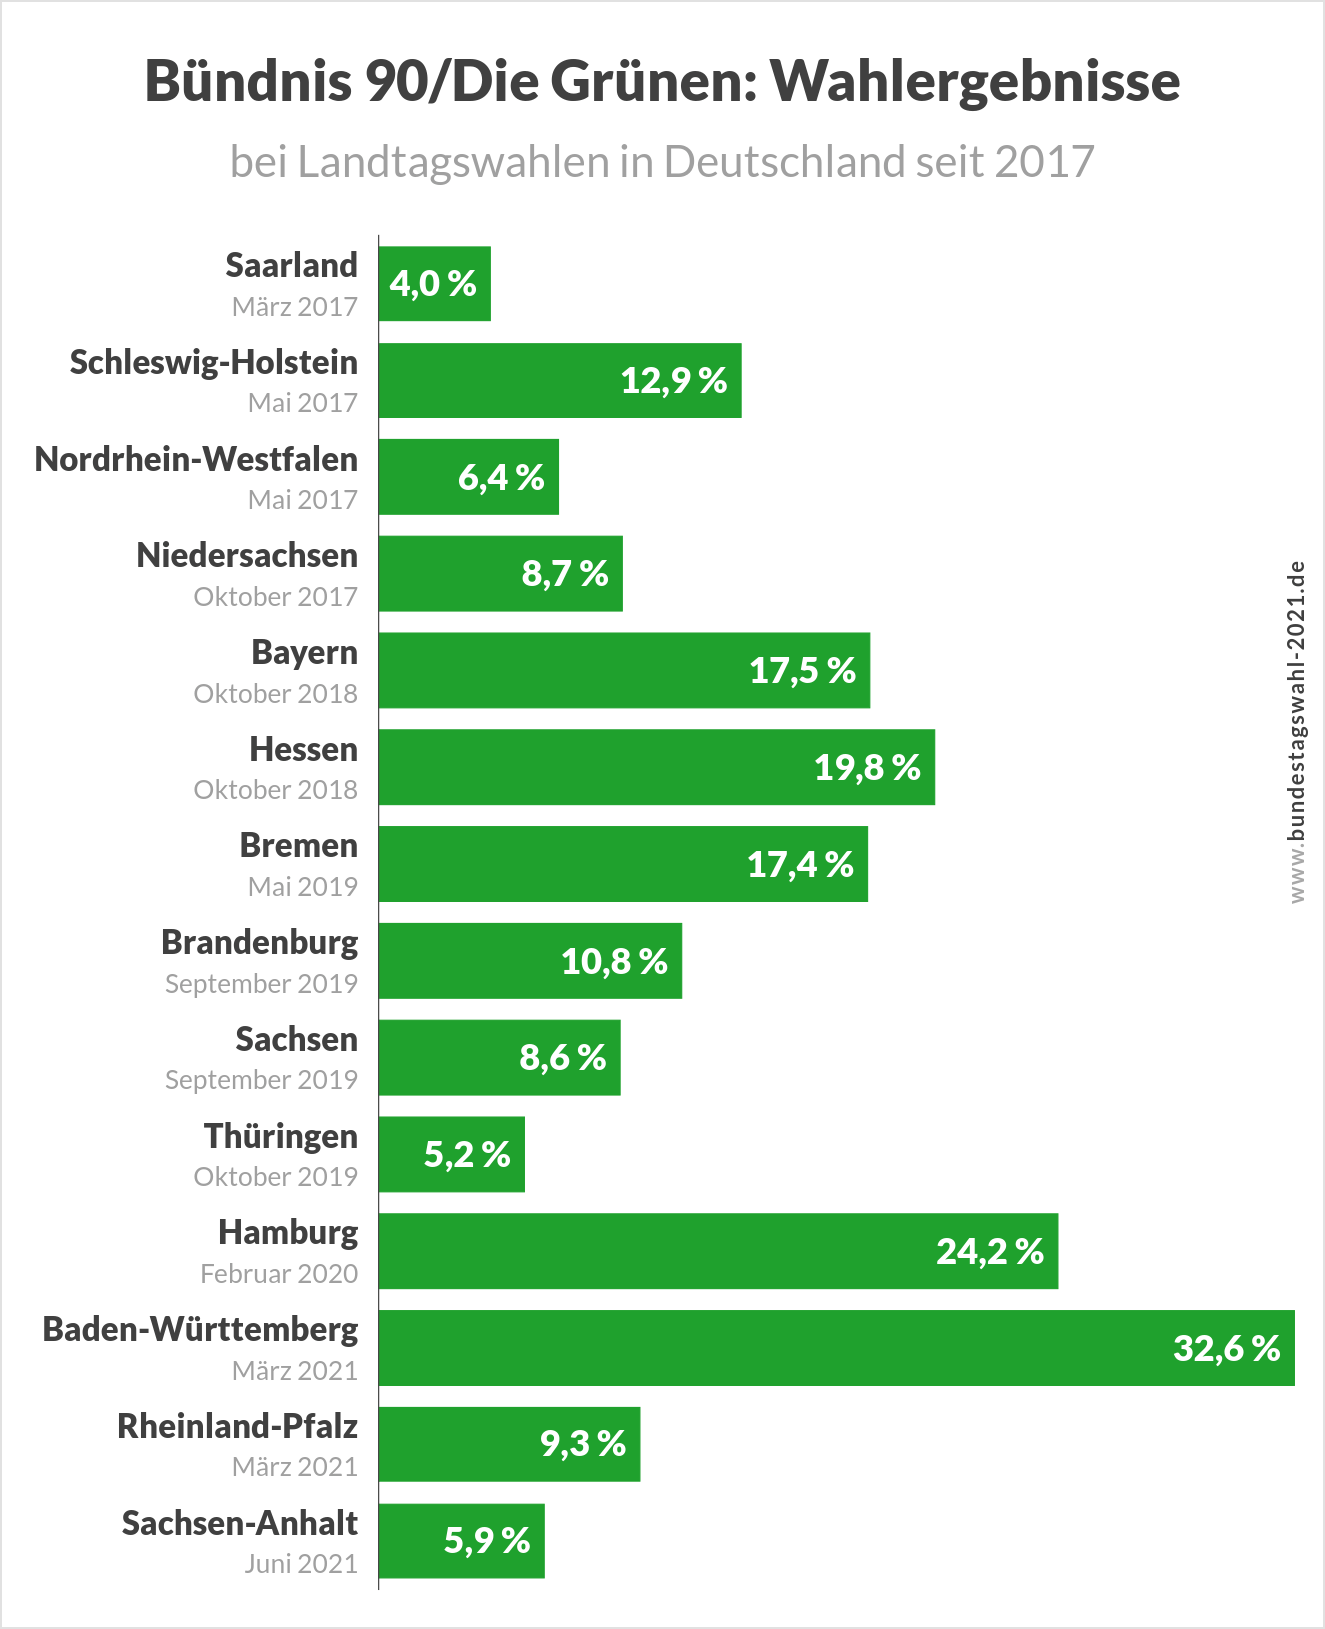 Bundestagswahl 2021 - Ergebnisse der Grünen bei (Landtags-)Wahlen in Deutschland